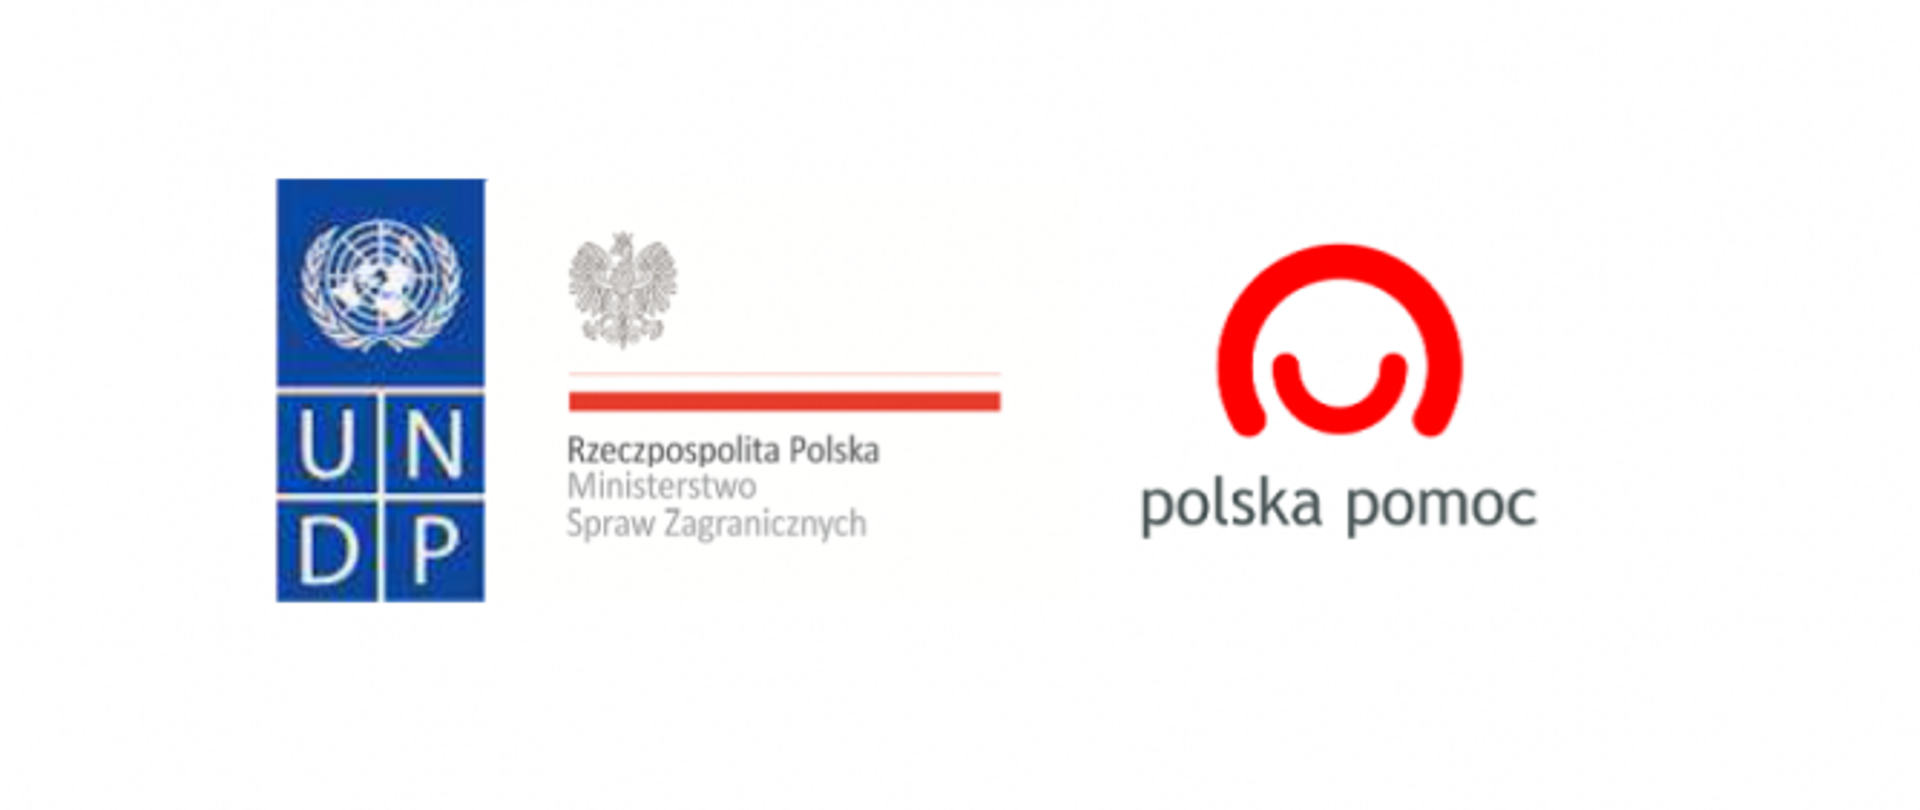 Logo UNDP, polskiego MSZ i Polskiej pomocy na białym tle